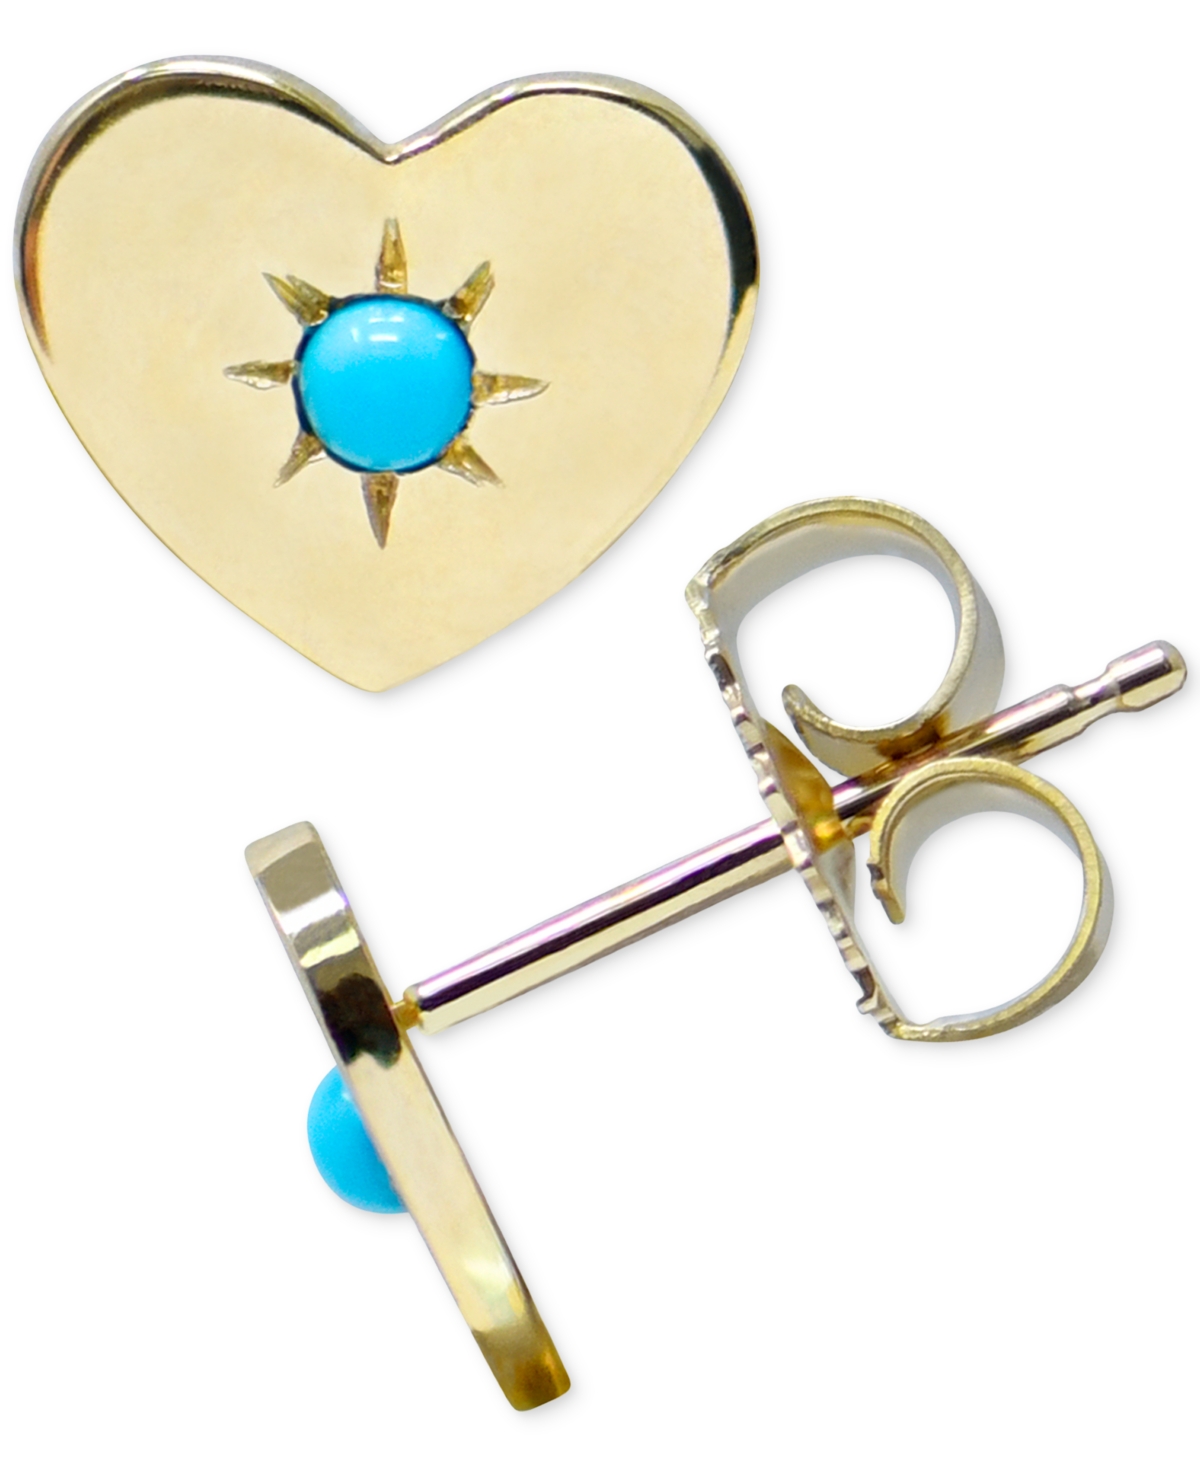 Turquoise Heart Stud Earrings in 14k Gold - Blue